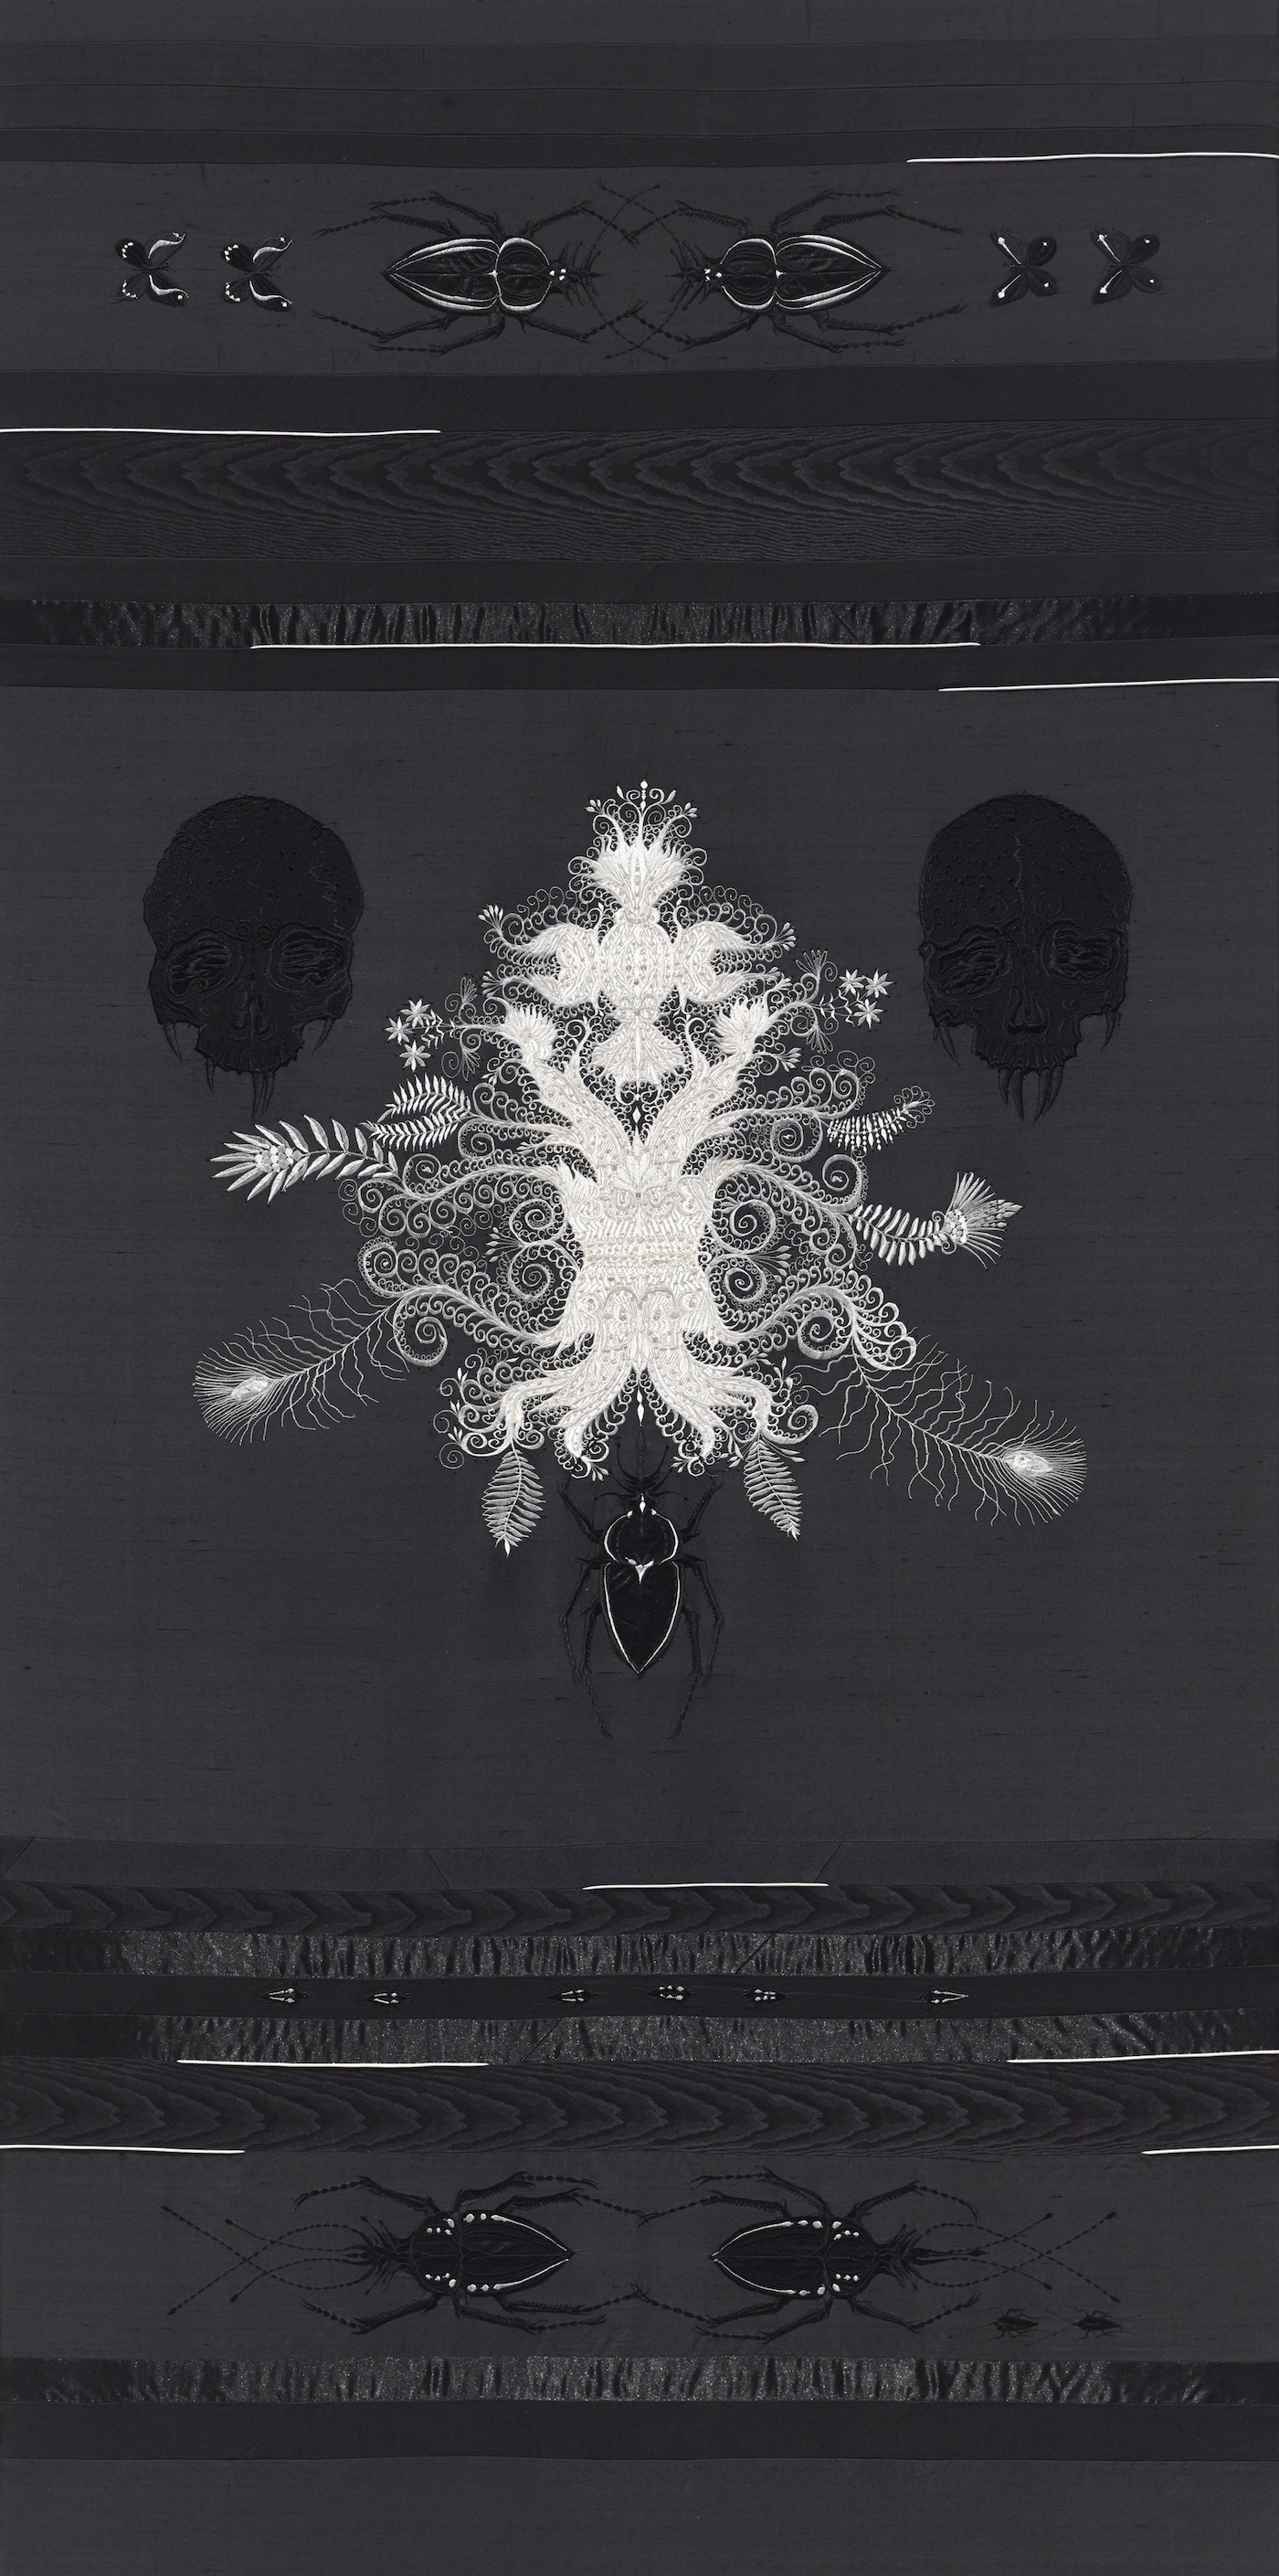 Angelo Filomeno, Amulet (White Chandelier), 2013, ricamo e cristalli su seta applicata su lino, cm 198x99. Courtesy: Courtesy: Angelo Filomeno / Galerie Lelong, New York / Galleria Giovanni Bonelli, Milano